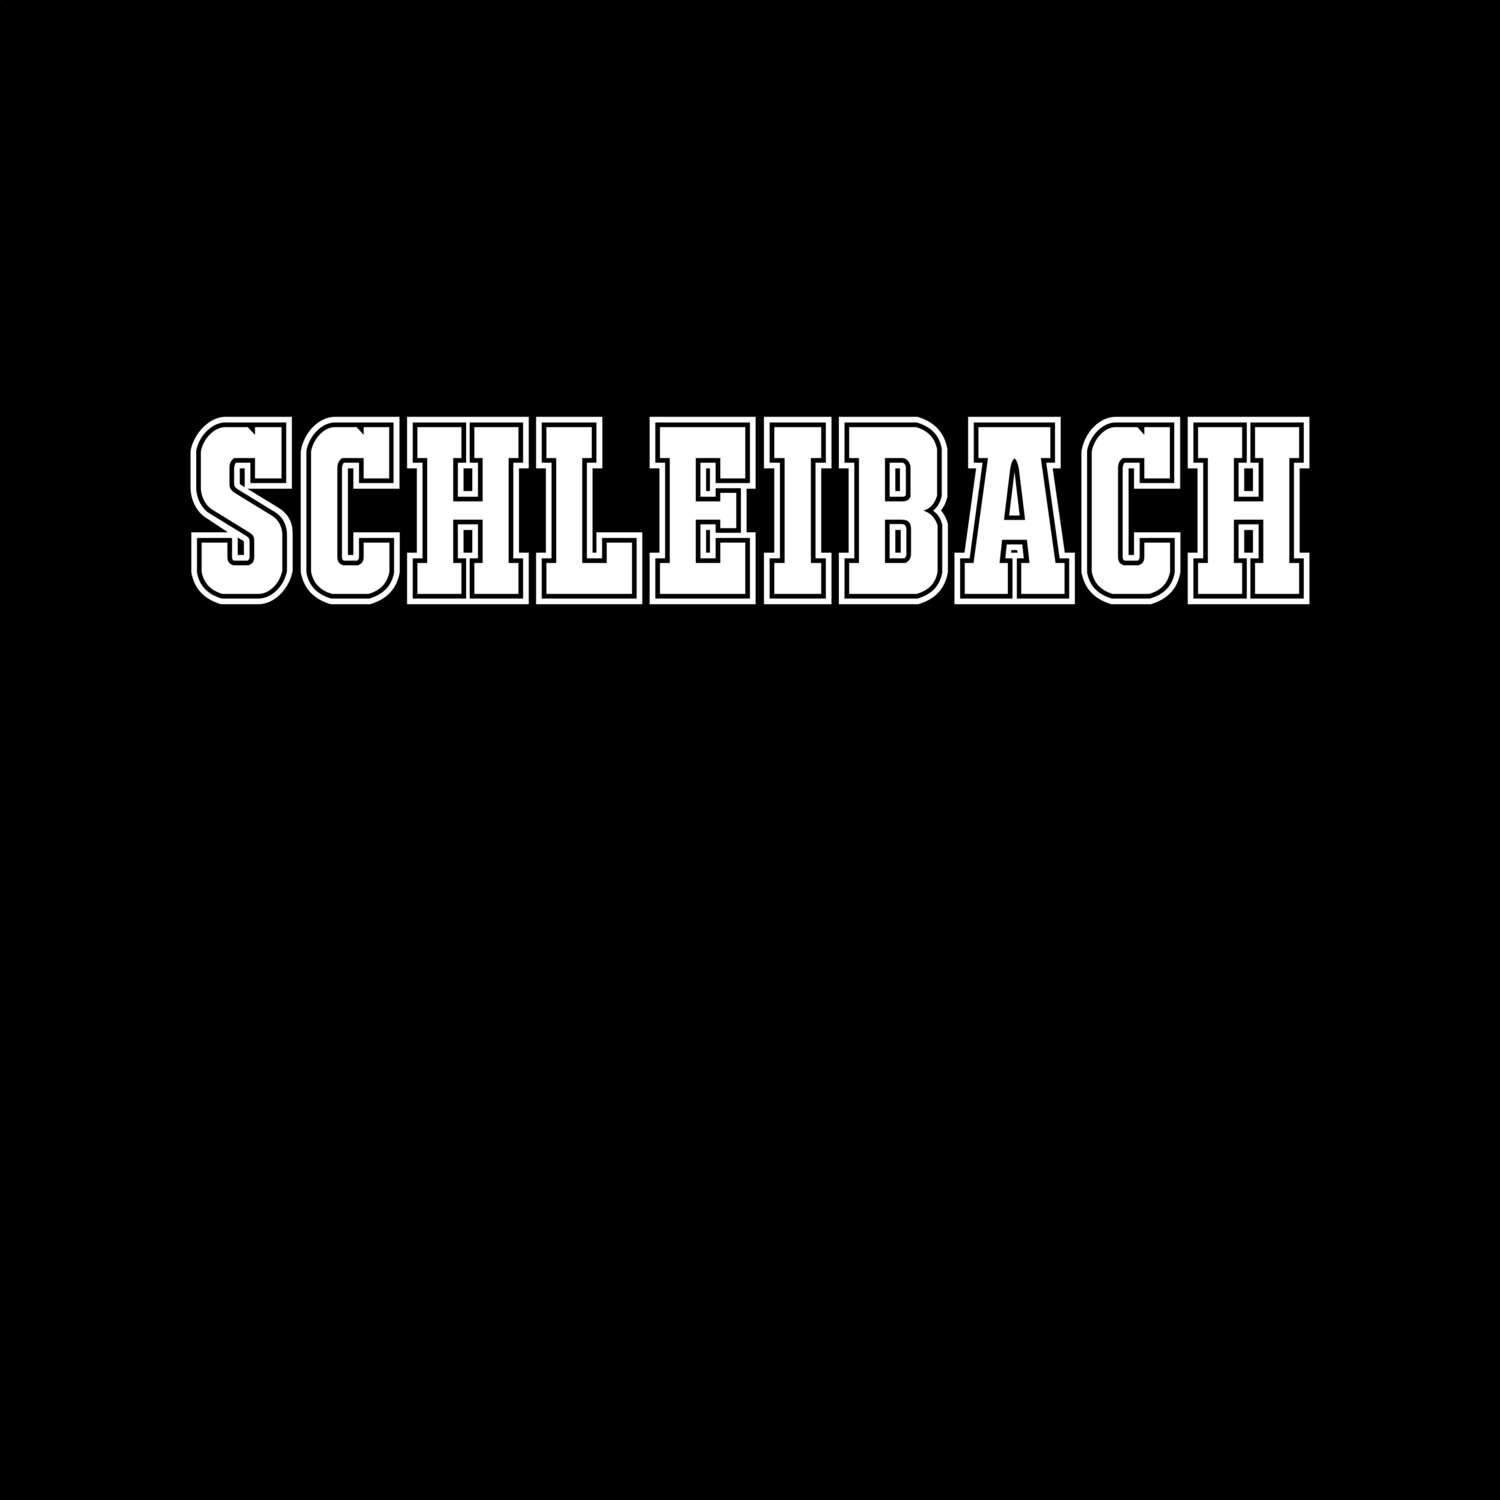 Schleibach T-Shirt »Classic«